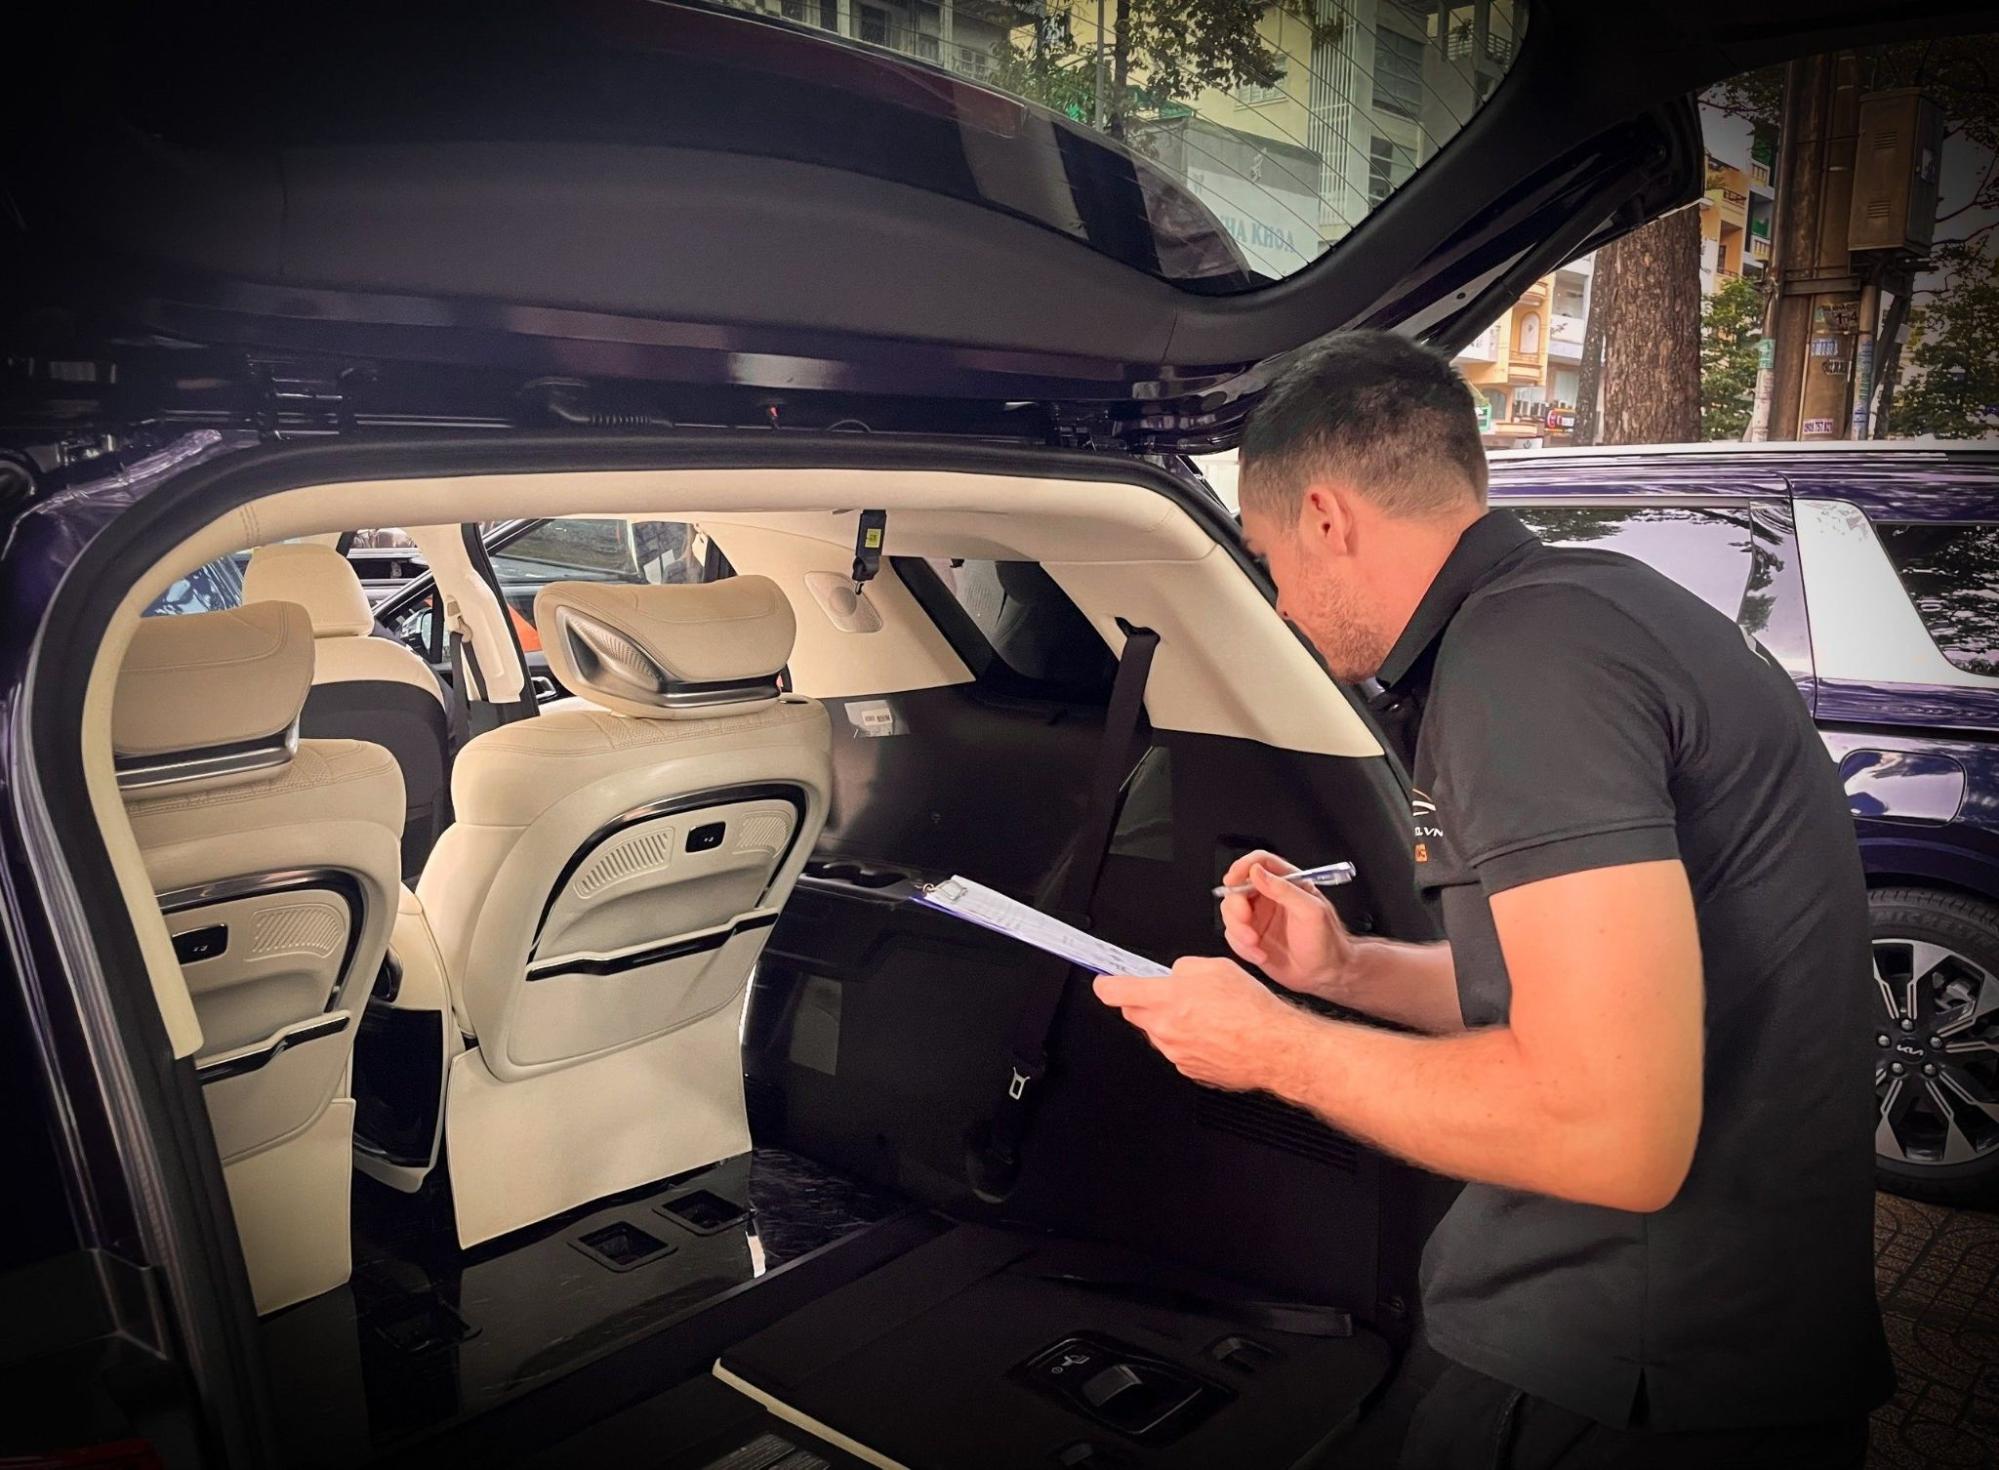 Thi công nâng cấp âm thanh cho gói độ Limousine xe Sedona